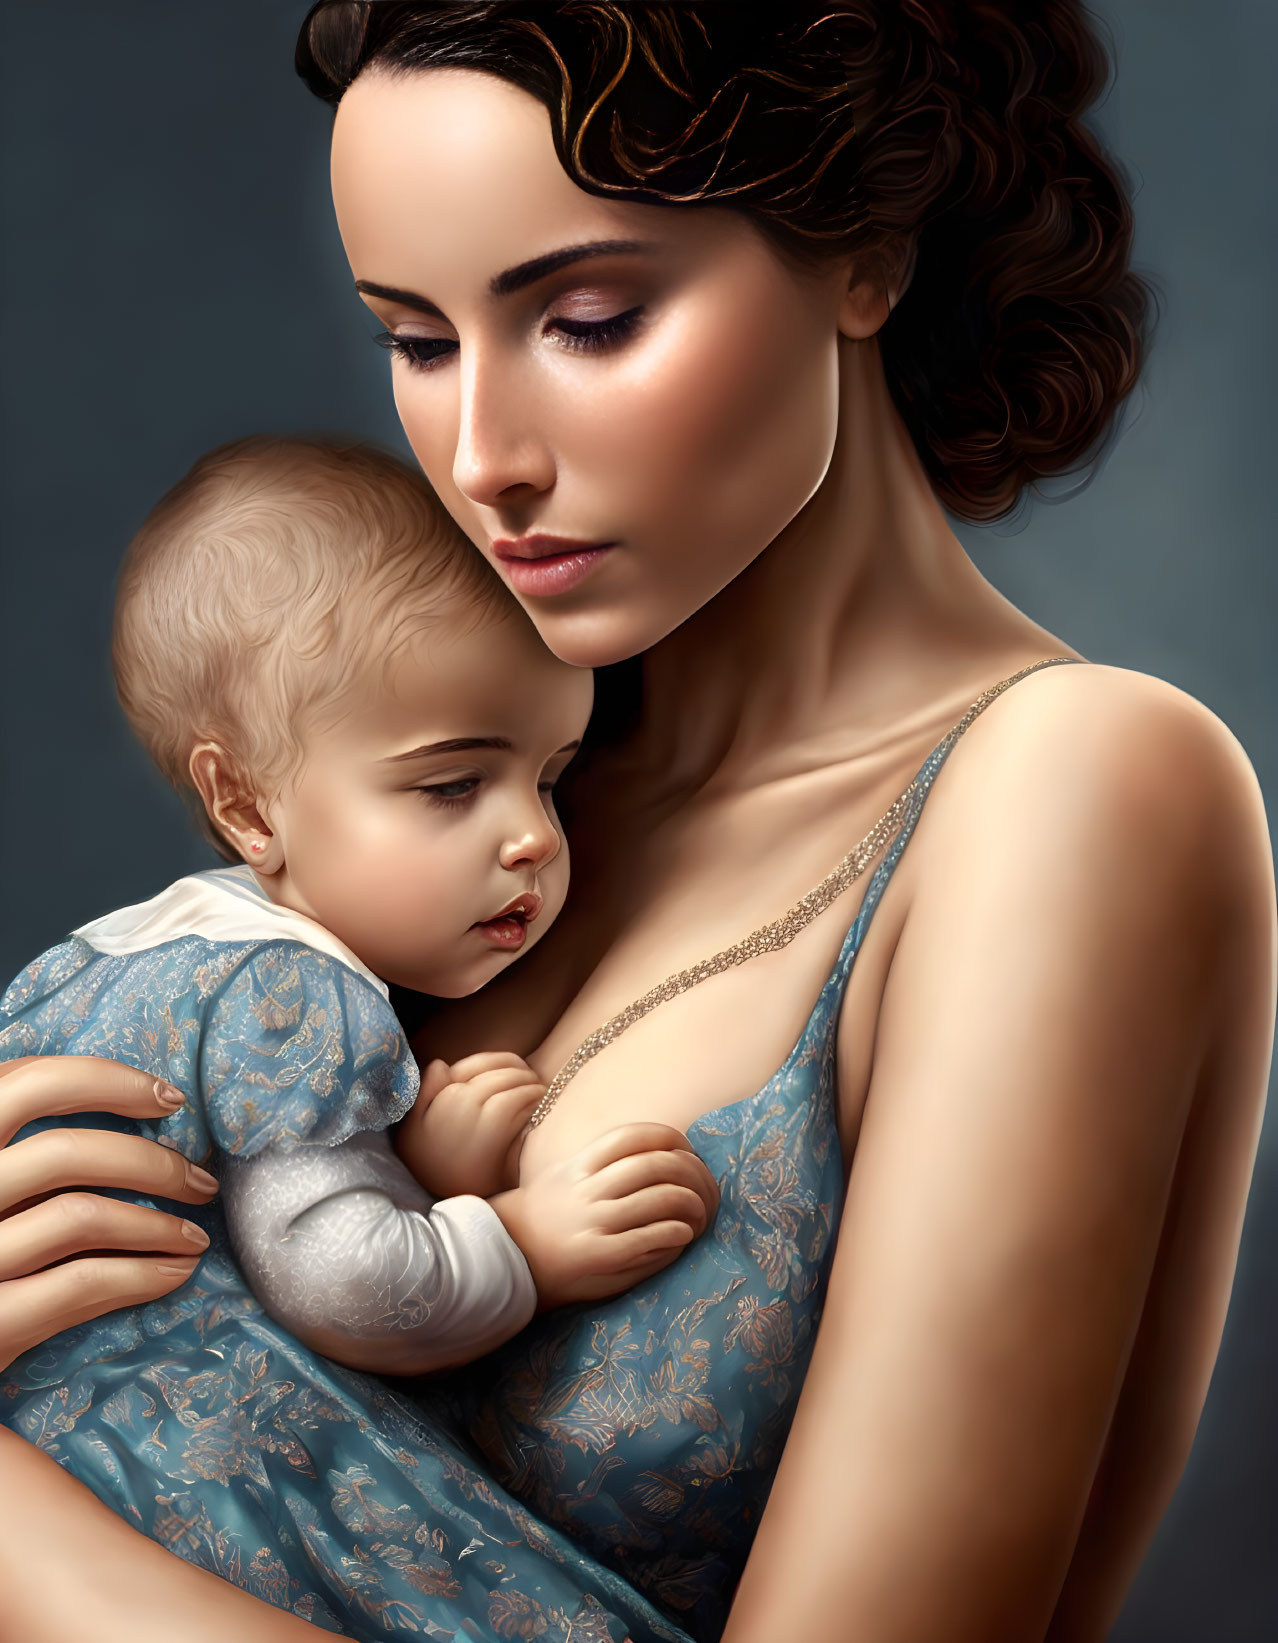 a woman breastfeeding